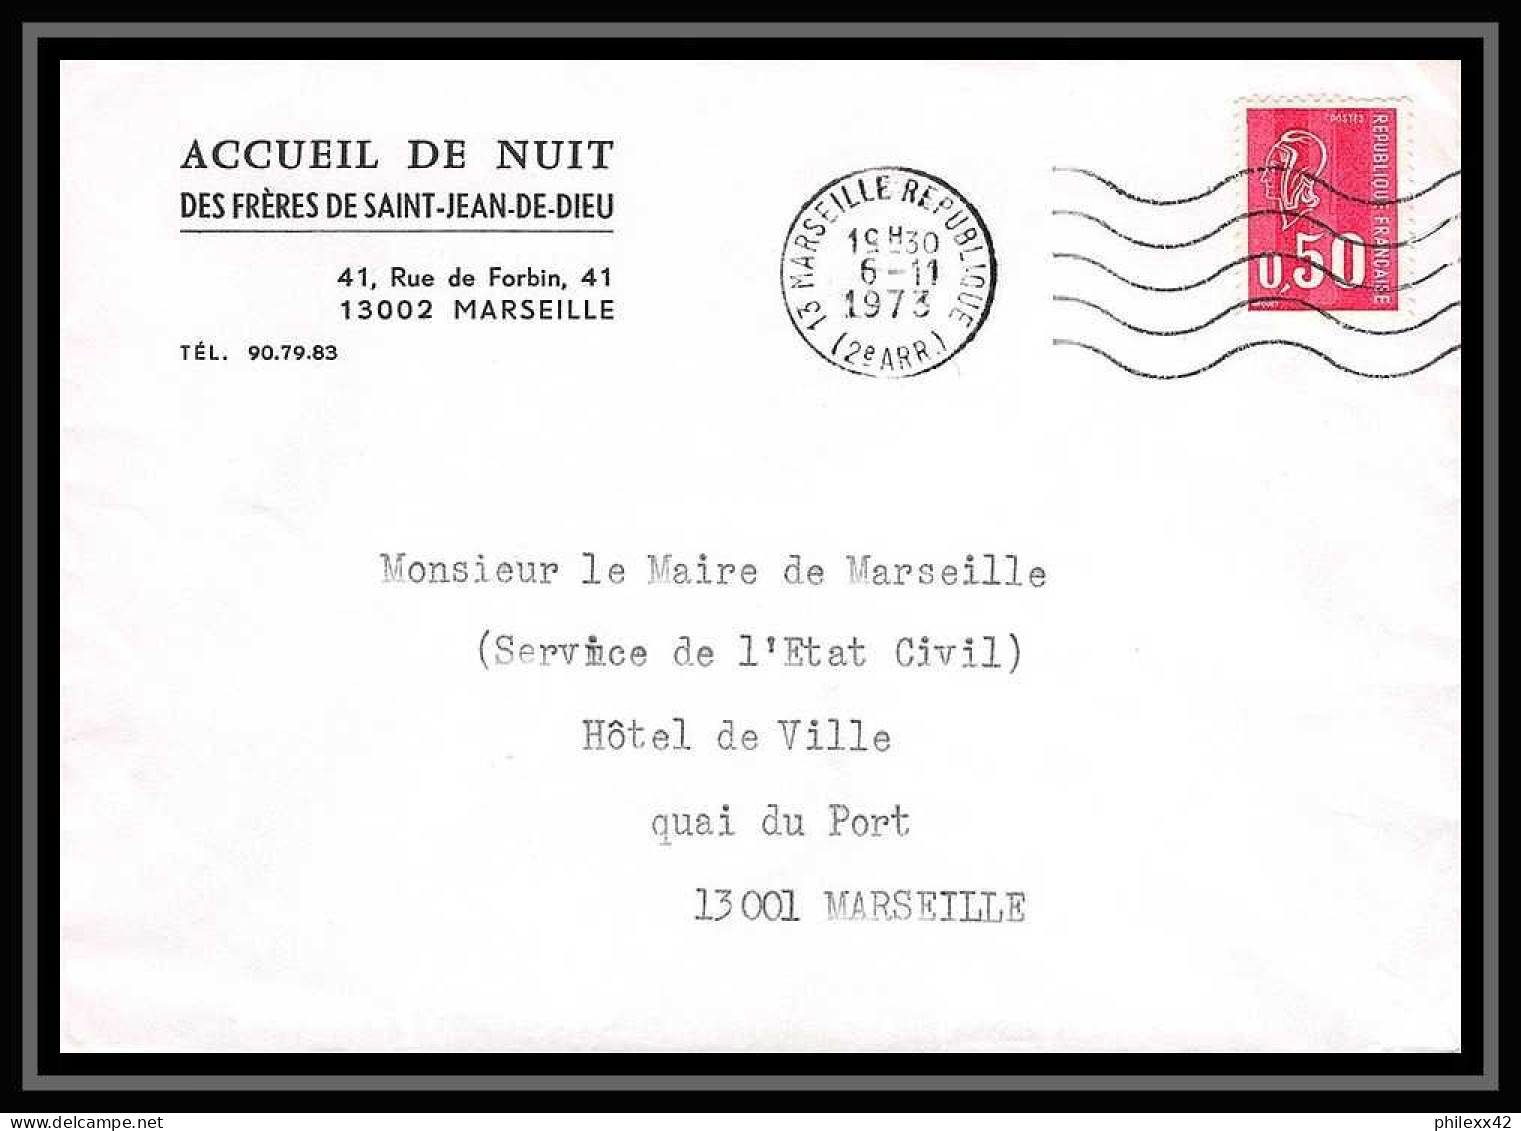 110589 lot de 18 Lettres Bouches du rhone Marseille république pour oblitérations 